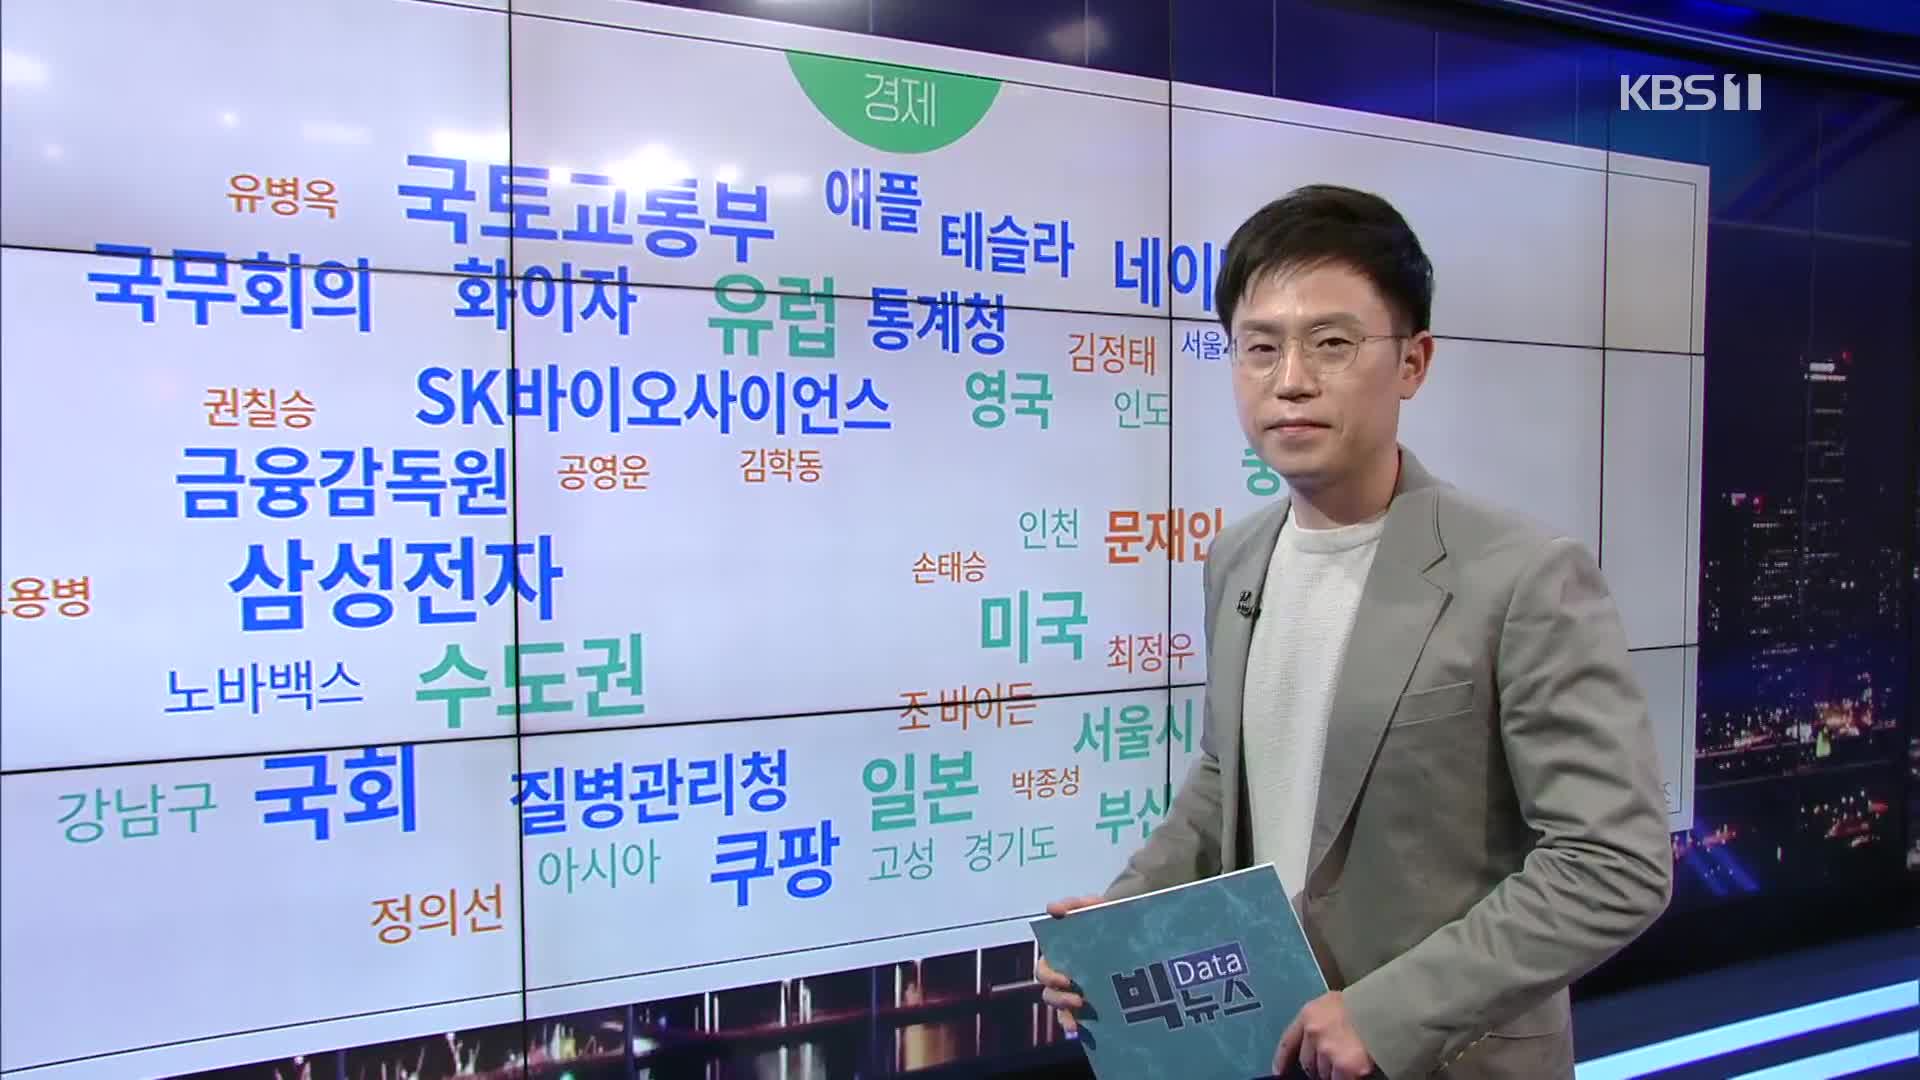 [빅뉴스] 국정원 “북한, 코로나 백신·치료제 원천기술 해킹 시도”…대마 환각 질주 운전자 징역 5년